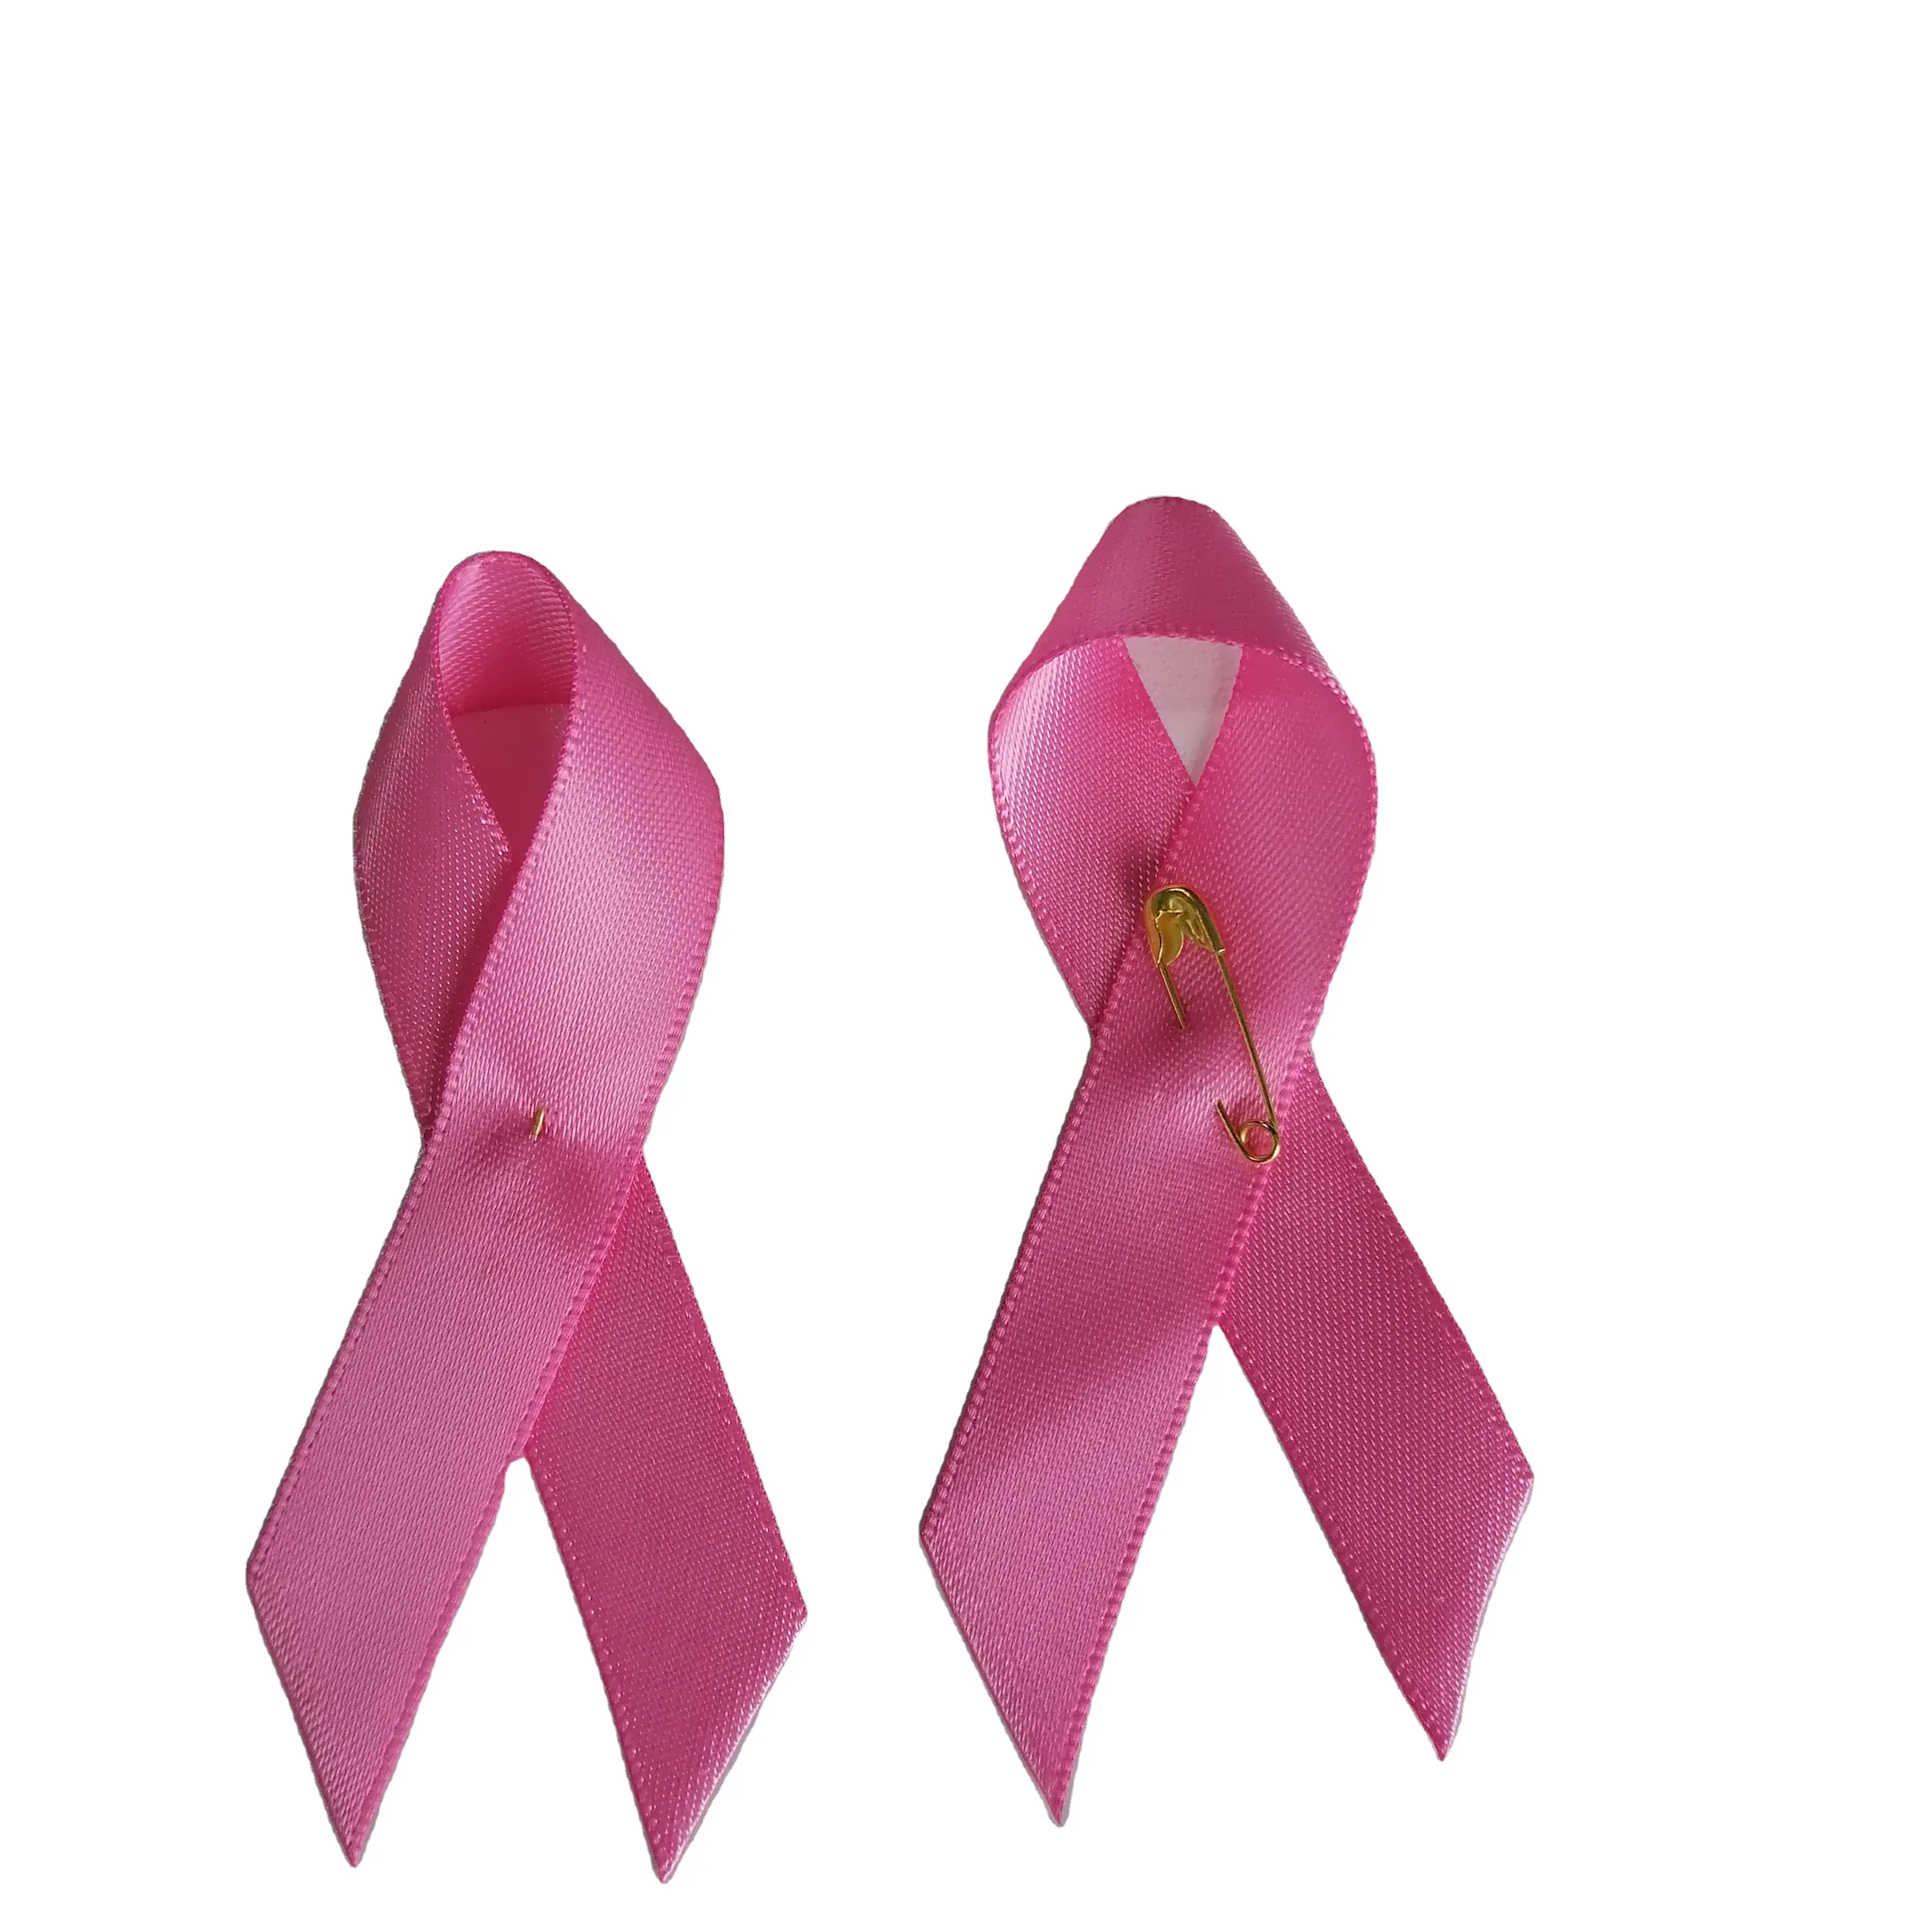 Kustom pita kanker merah muda Satin payudara kesadaran pita Pin pesona grosir